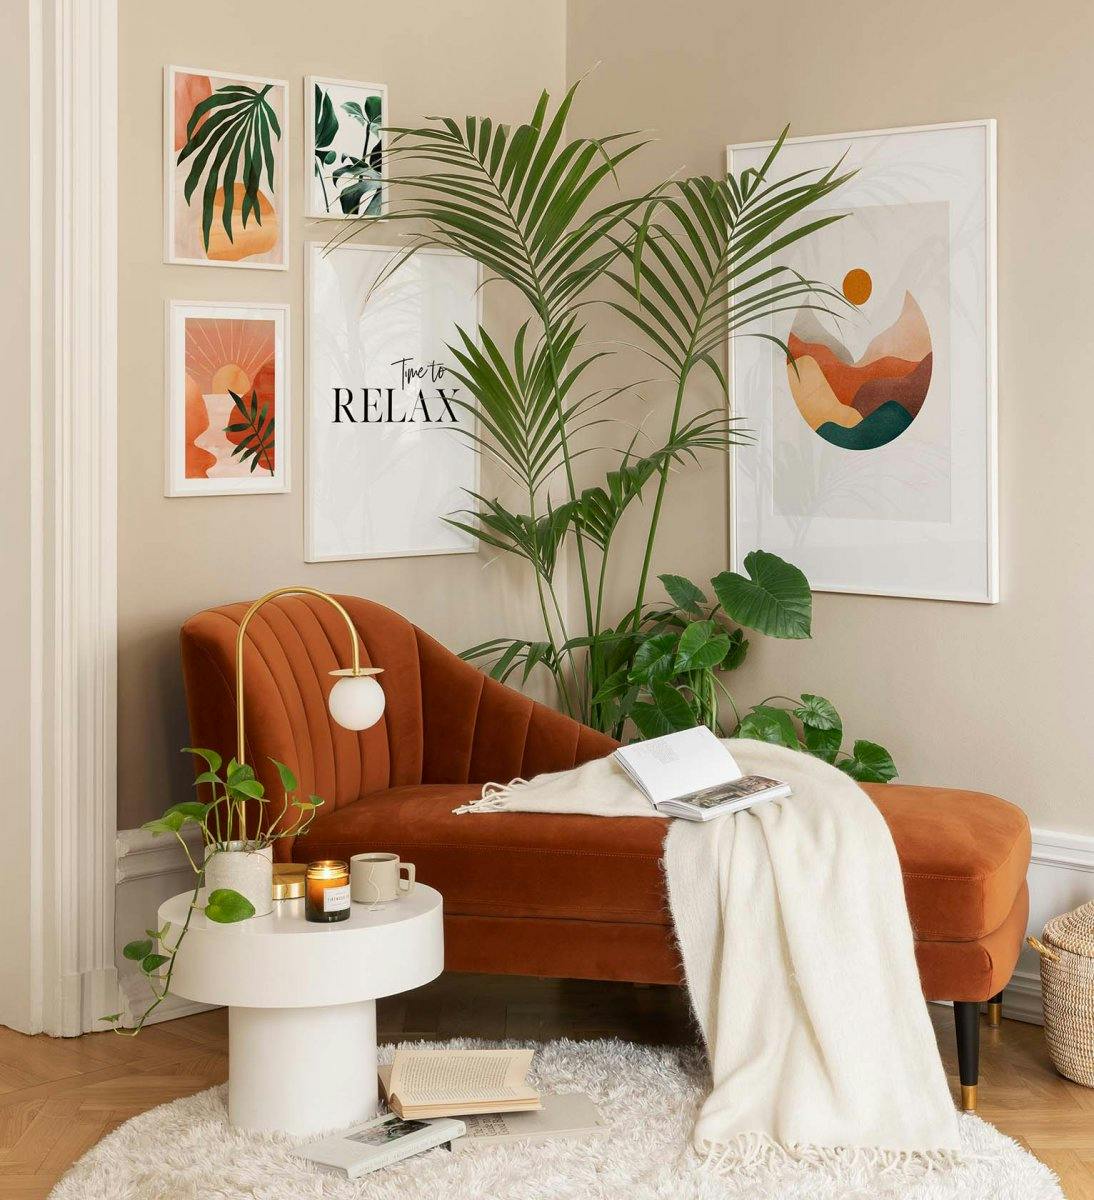 معرض جداري بتصميم جرافيك يتميز بألوان برتقالية وخضراء لافتة للنظر مناسب لغرفة المعيشة